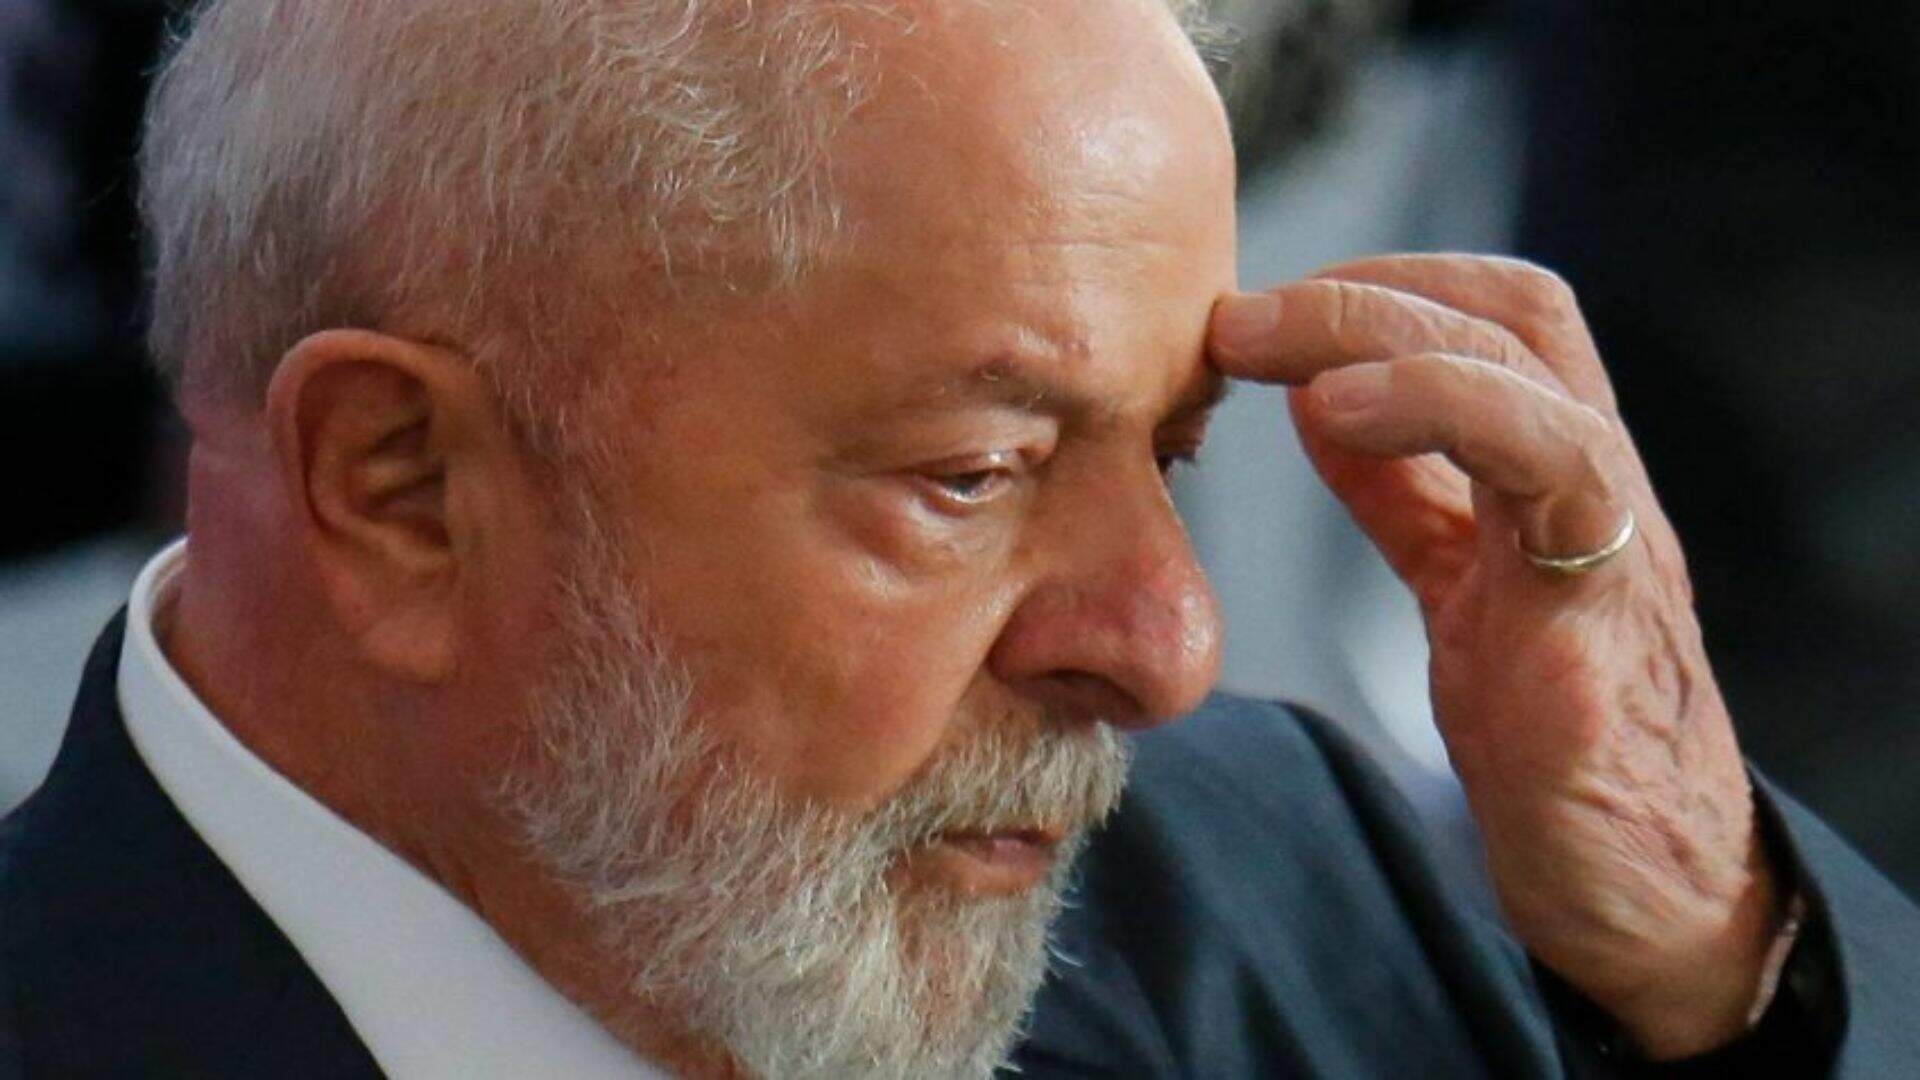 Estado de saúde do Lula é atualizado ao vivo na Globo; Descubra o que aconteceu com o presidente